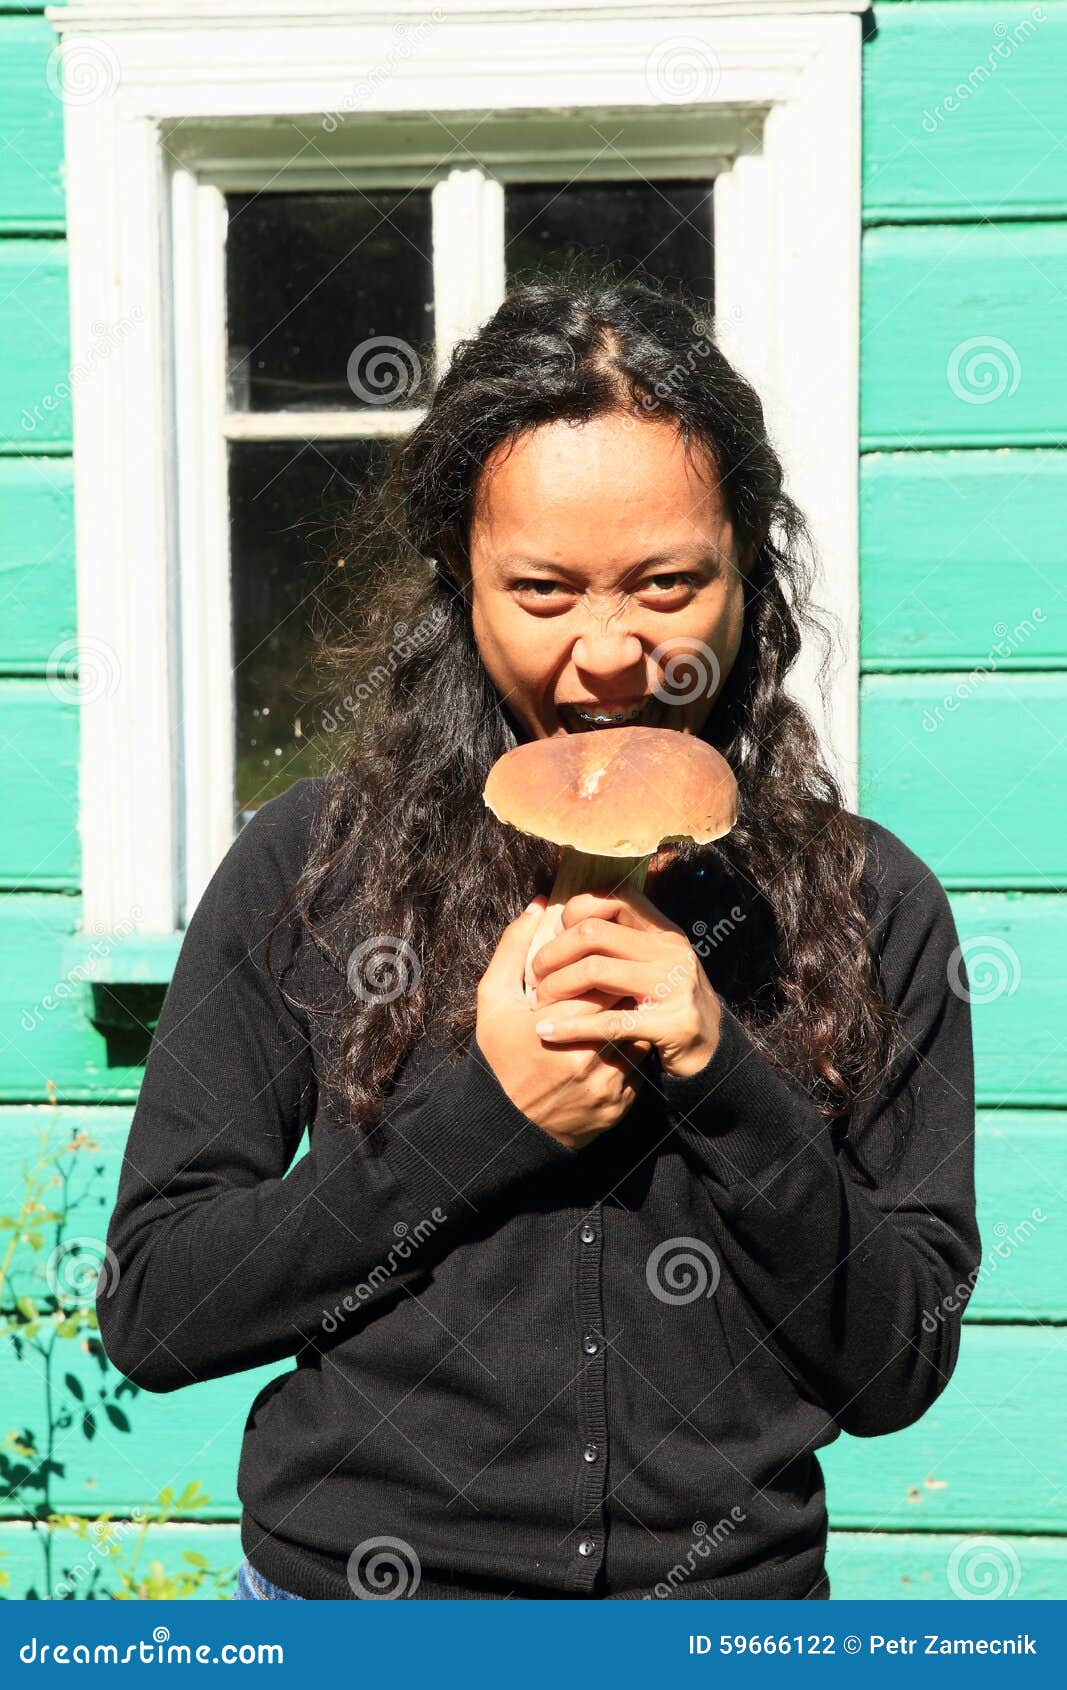 Dziewczyny mienia pieczarka. Indonezyjska dziewczyna - uśmiechnięta młoda kobieta gryźć dużej pieczarki typ borowik w czarnym ciągnieniu (grzyb)